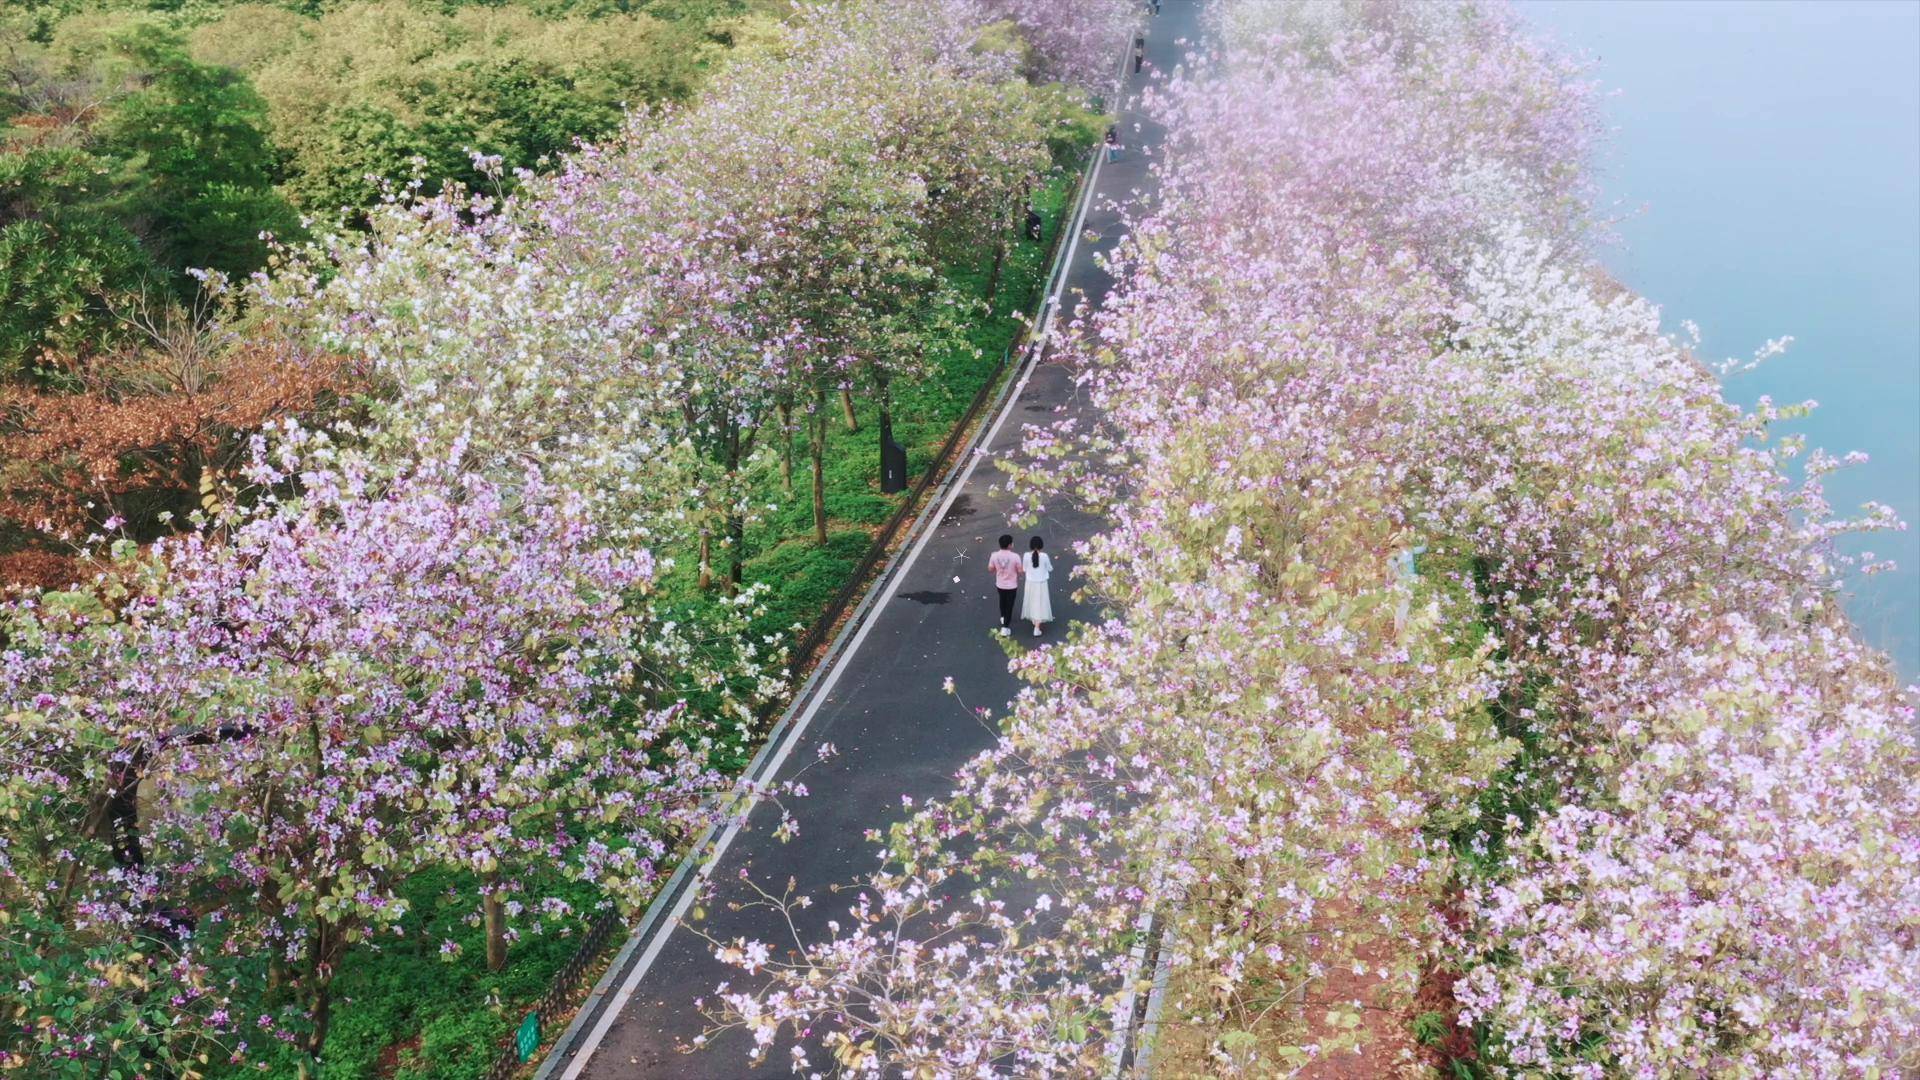 广州紫荆花最美观赏地图片